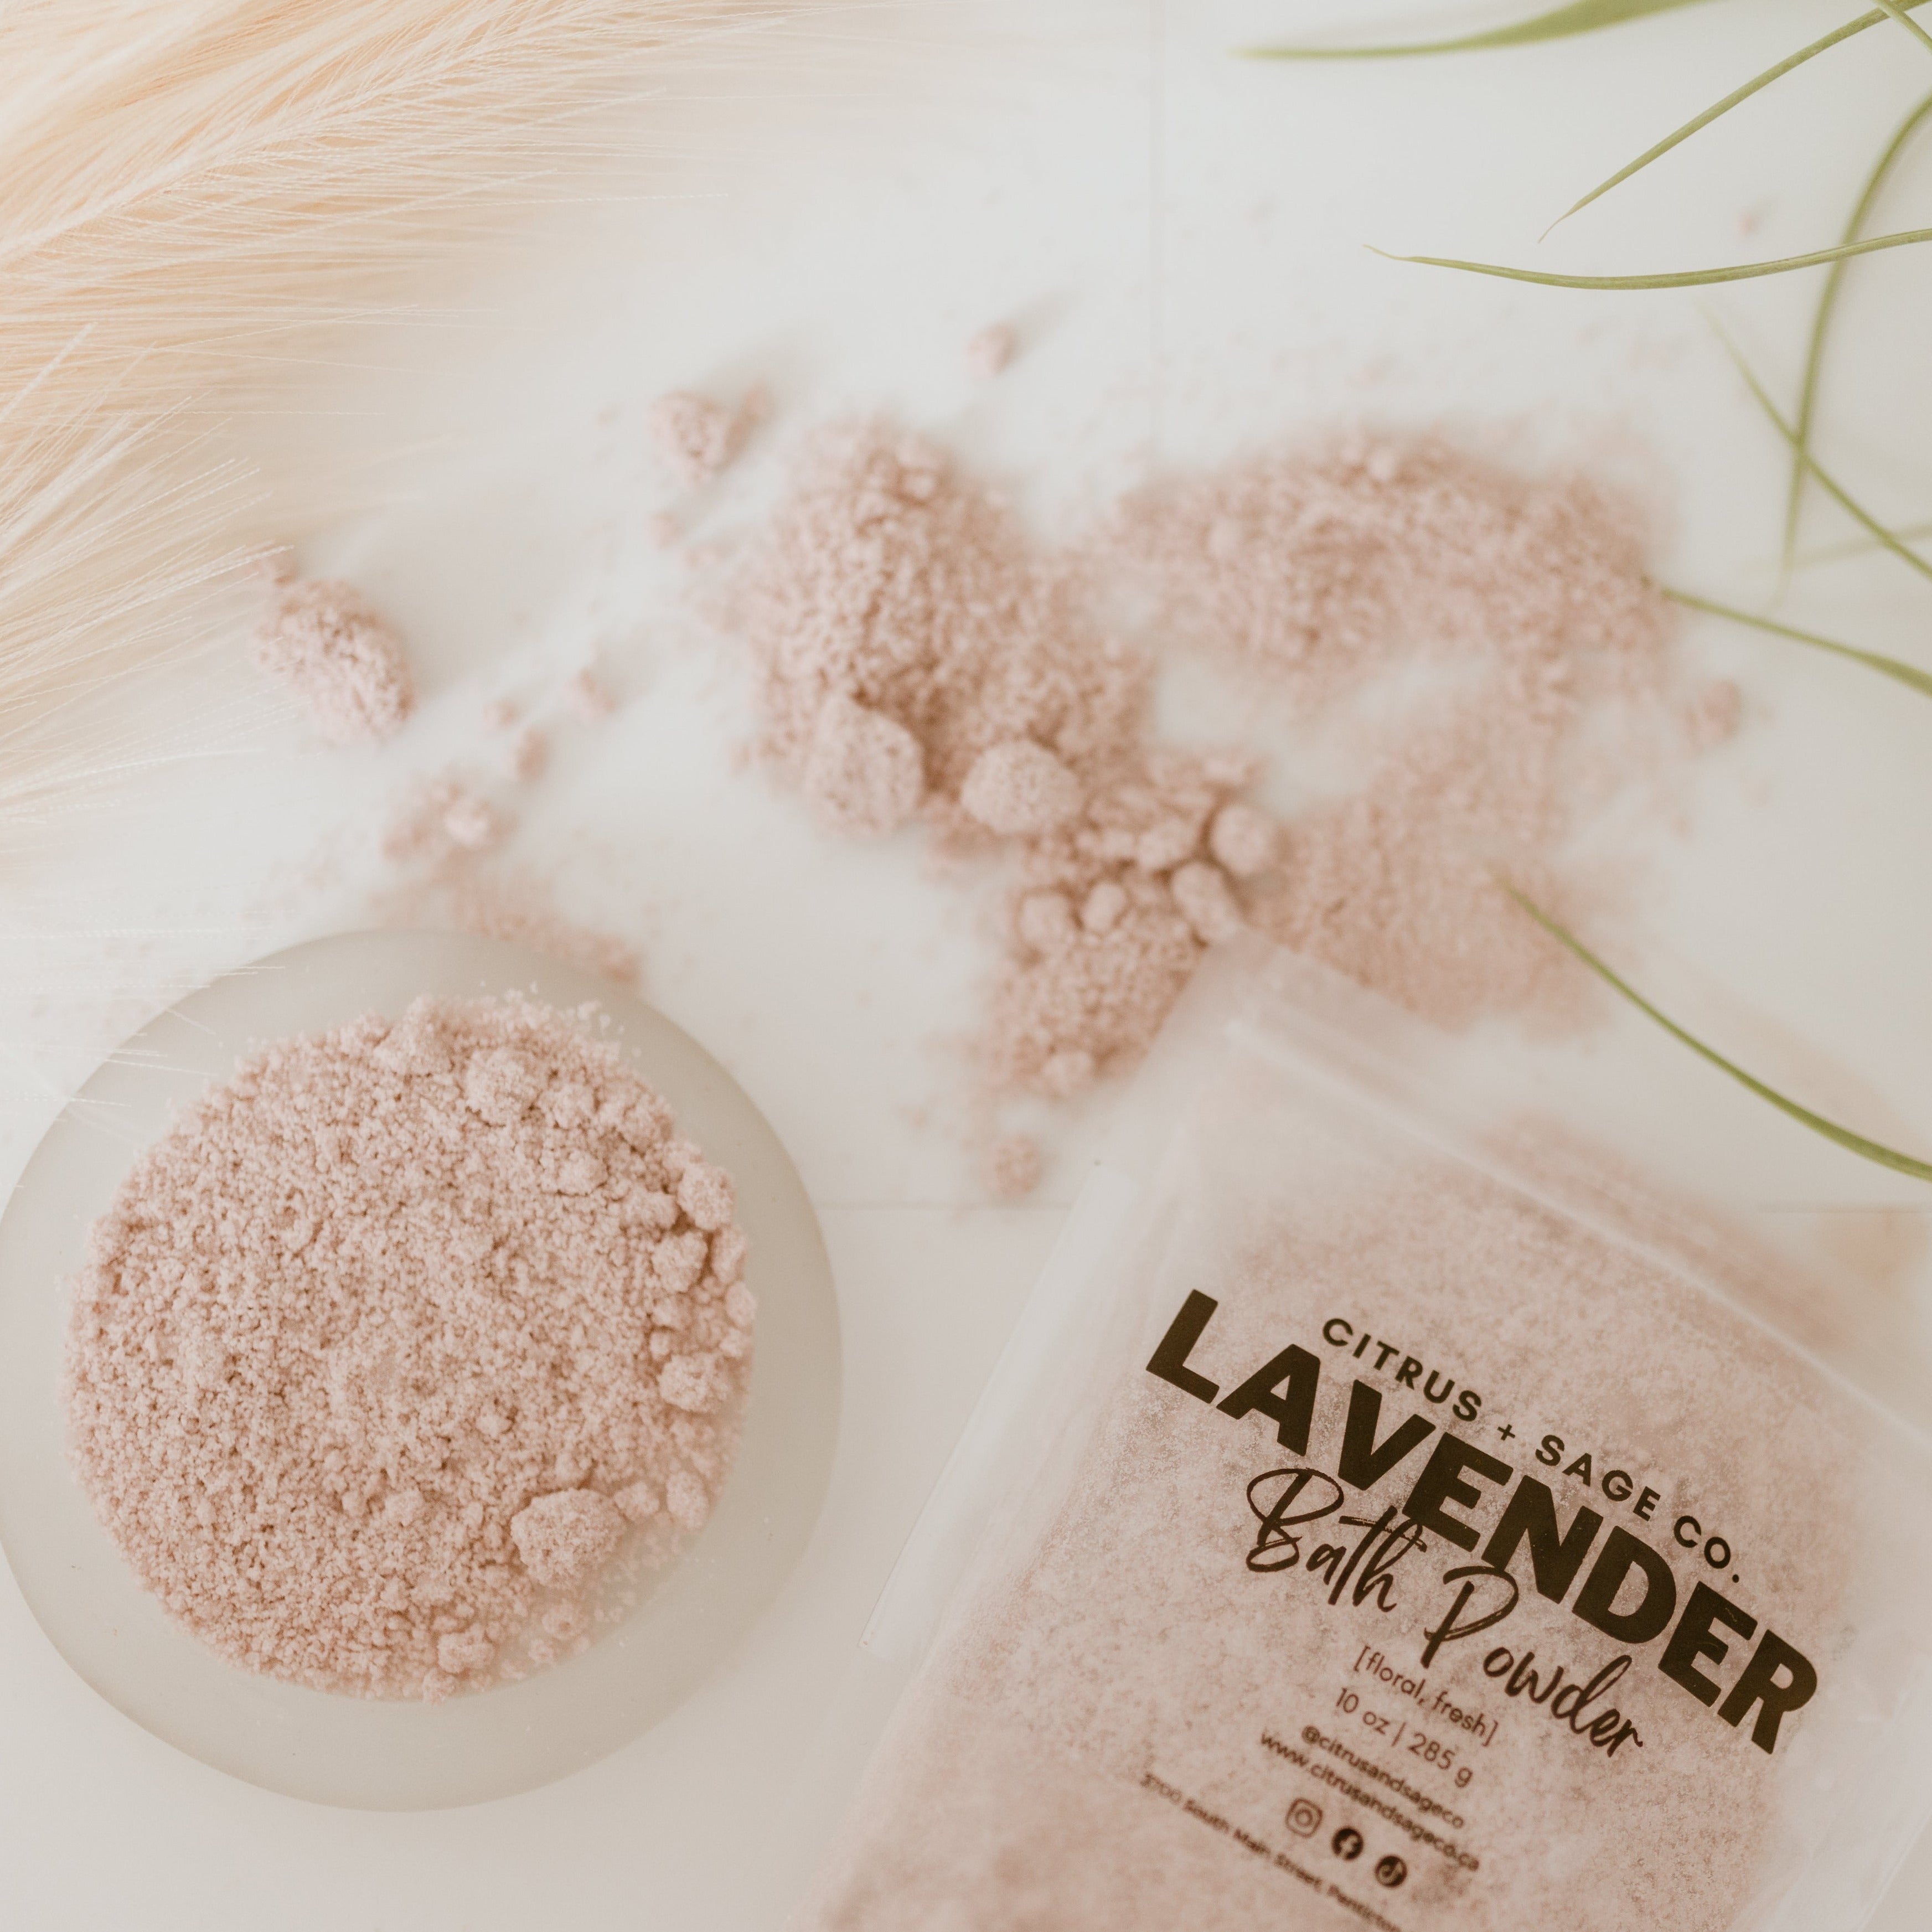 Lavender Bath Powder.